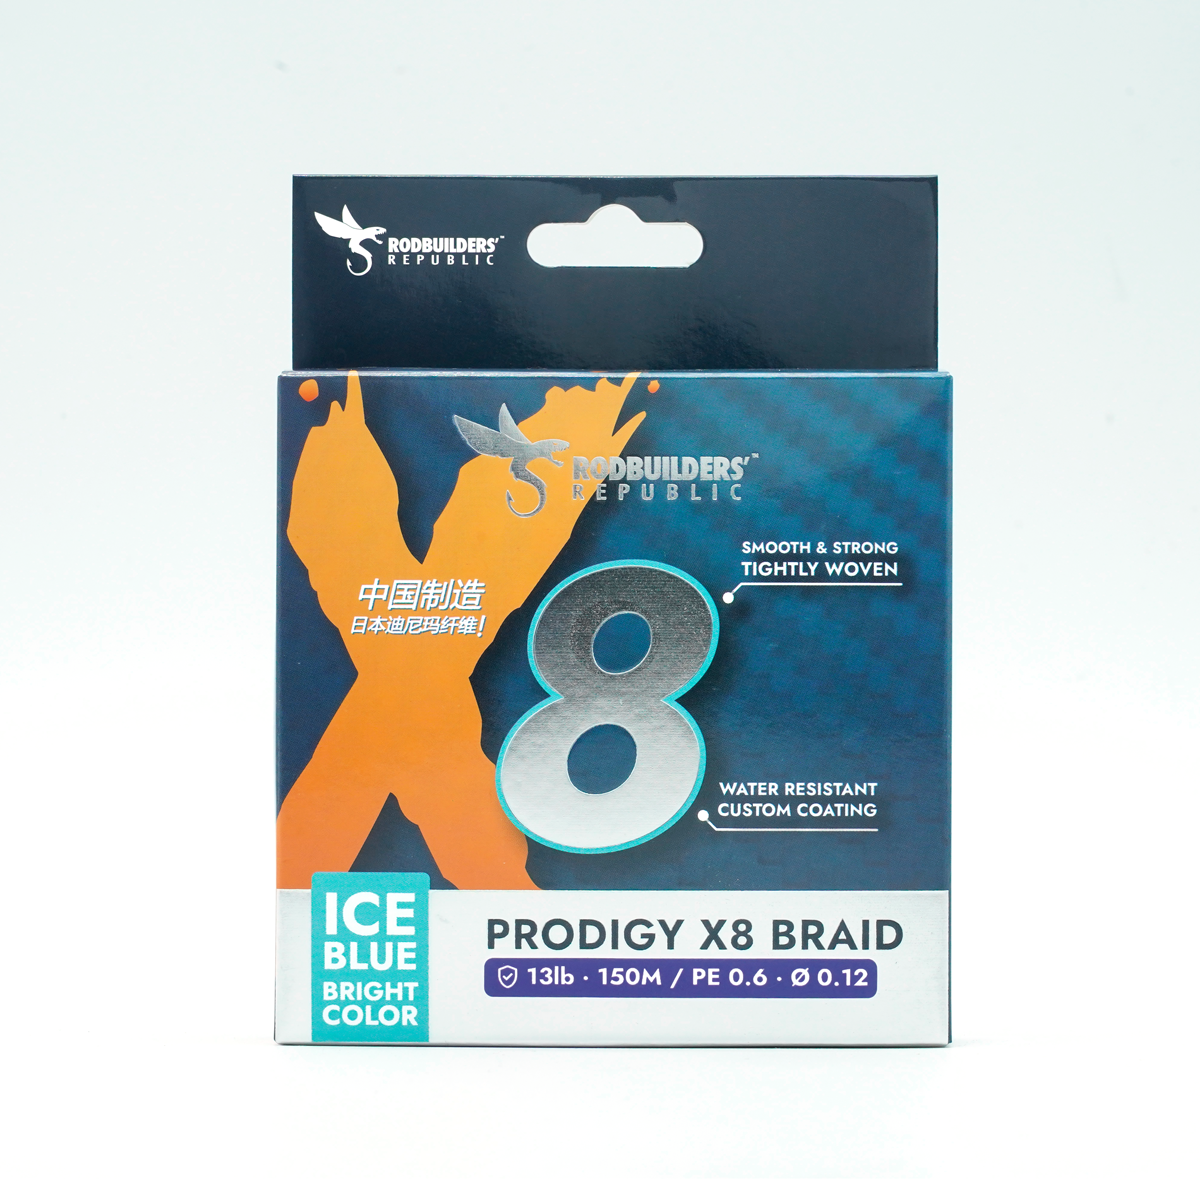 Prodigy X8 Braid